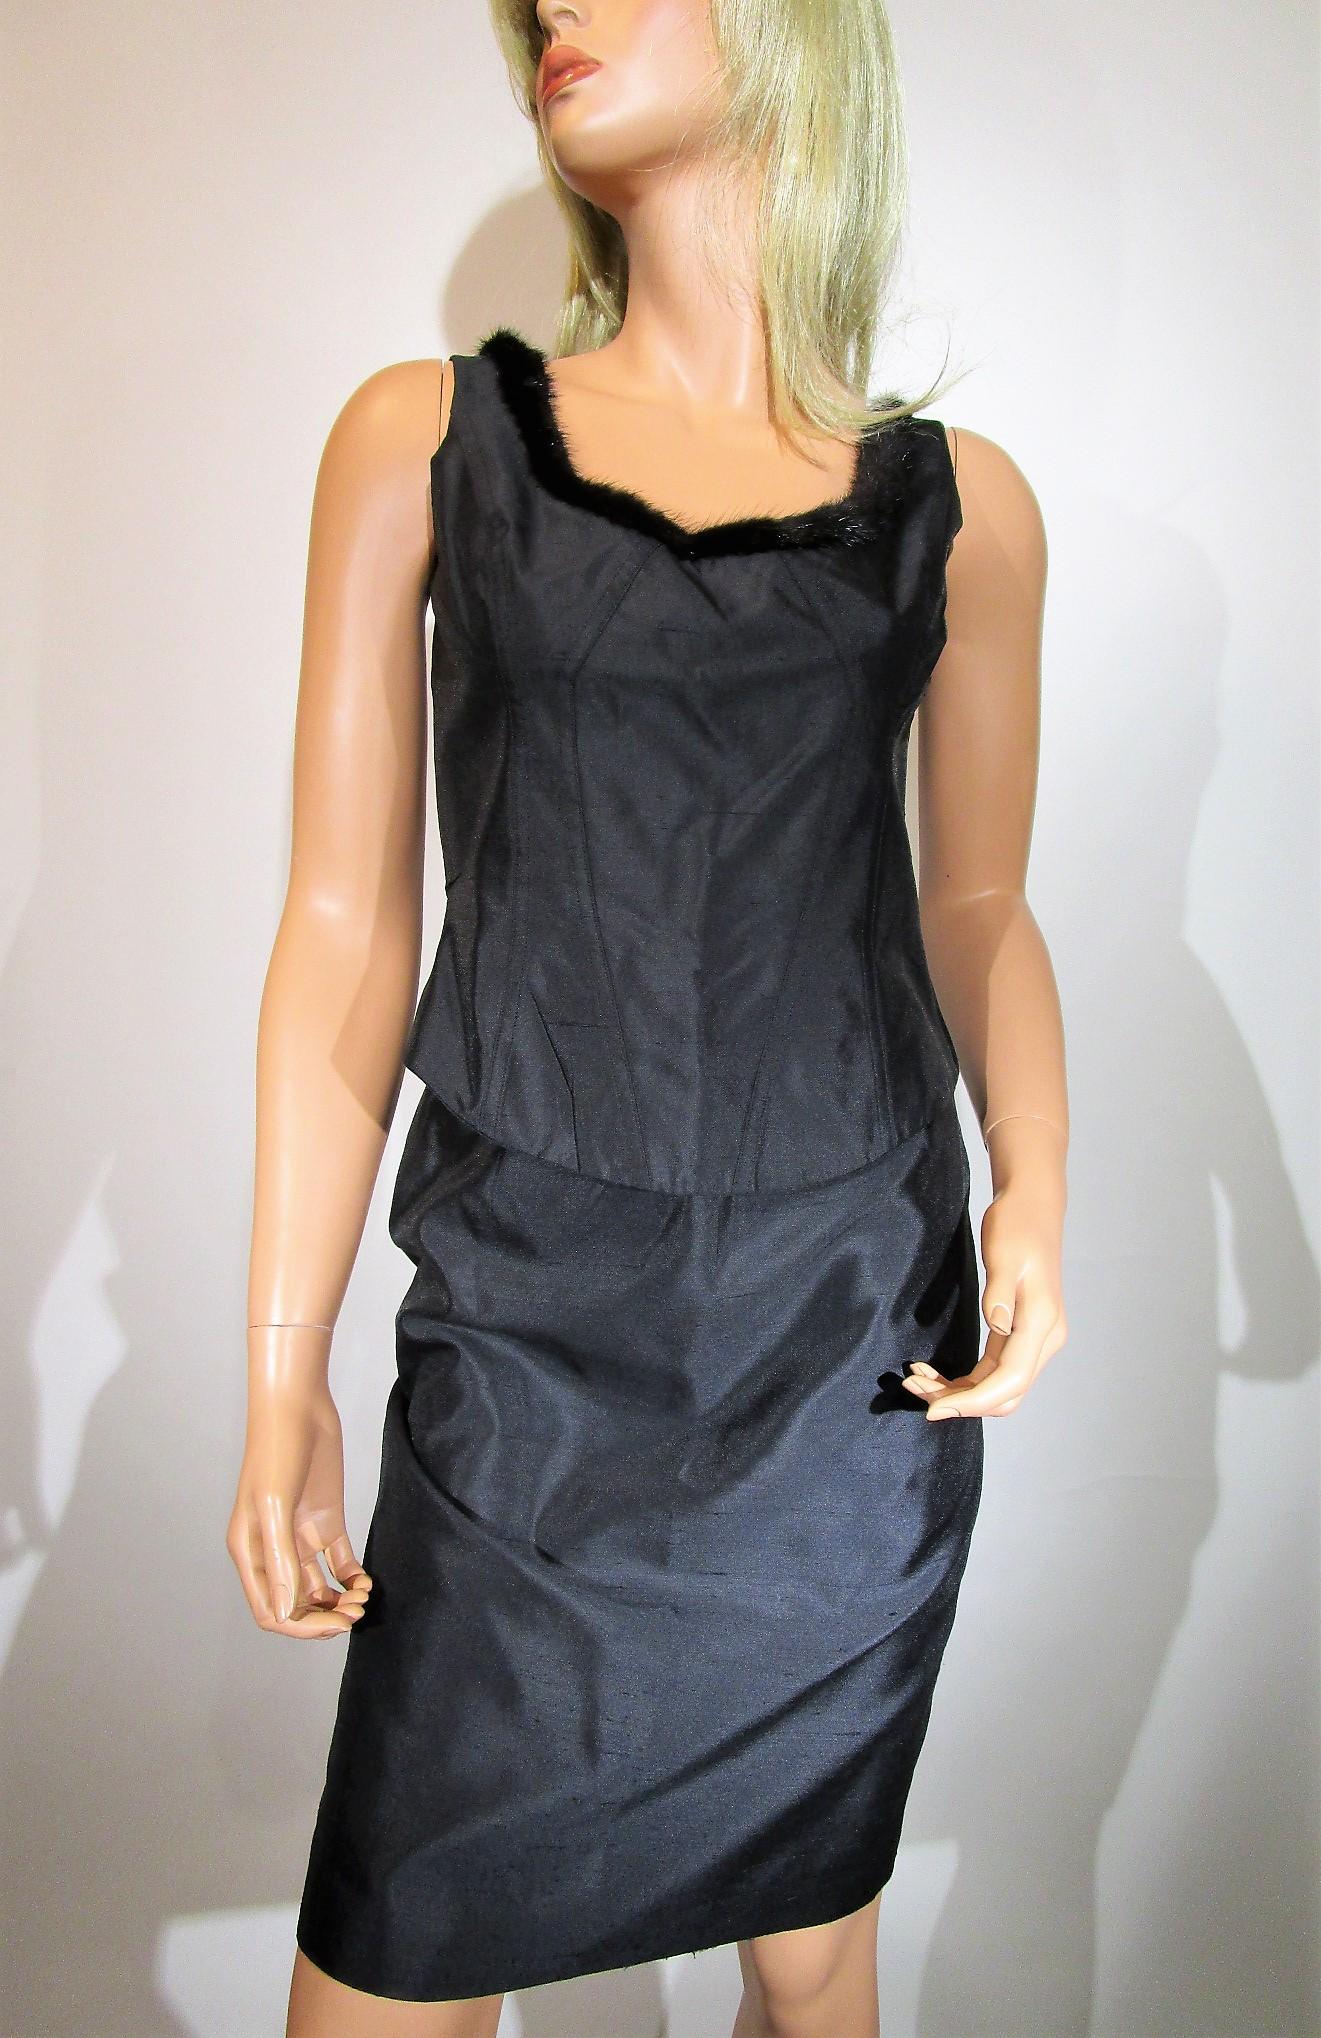 ESCADA 3-piece Set MINK Trim Black Blazer Skirt Tank Top Jacket Sz 36/ US6 For Sale 2